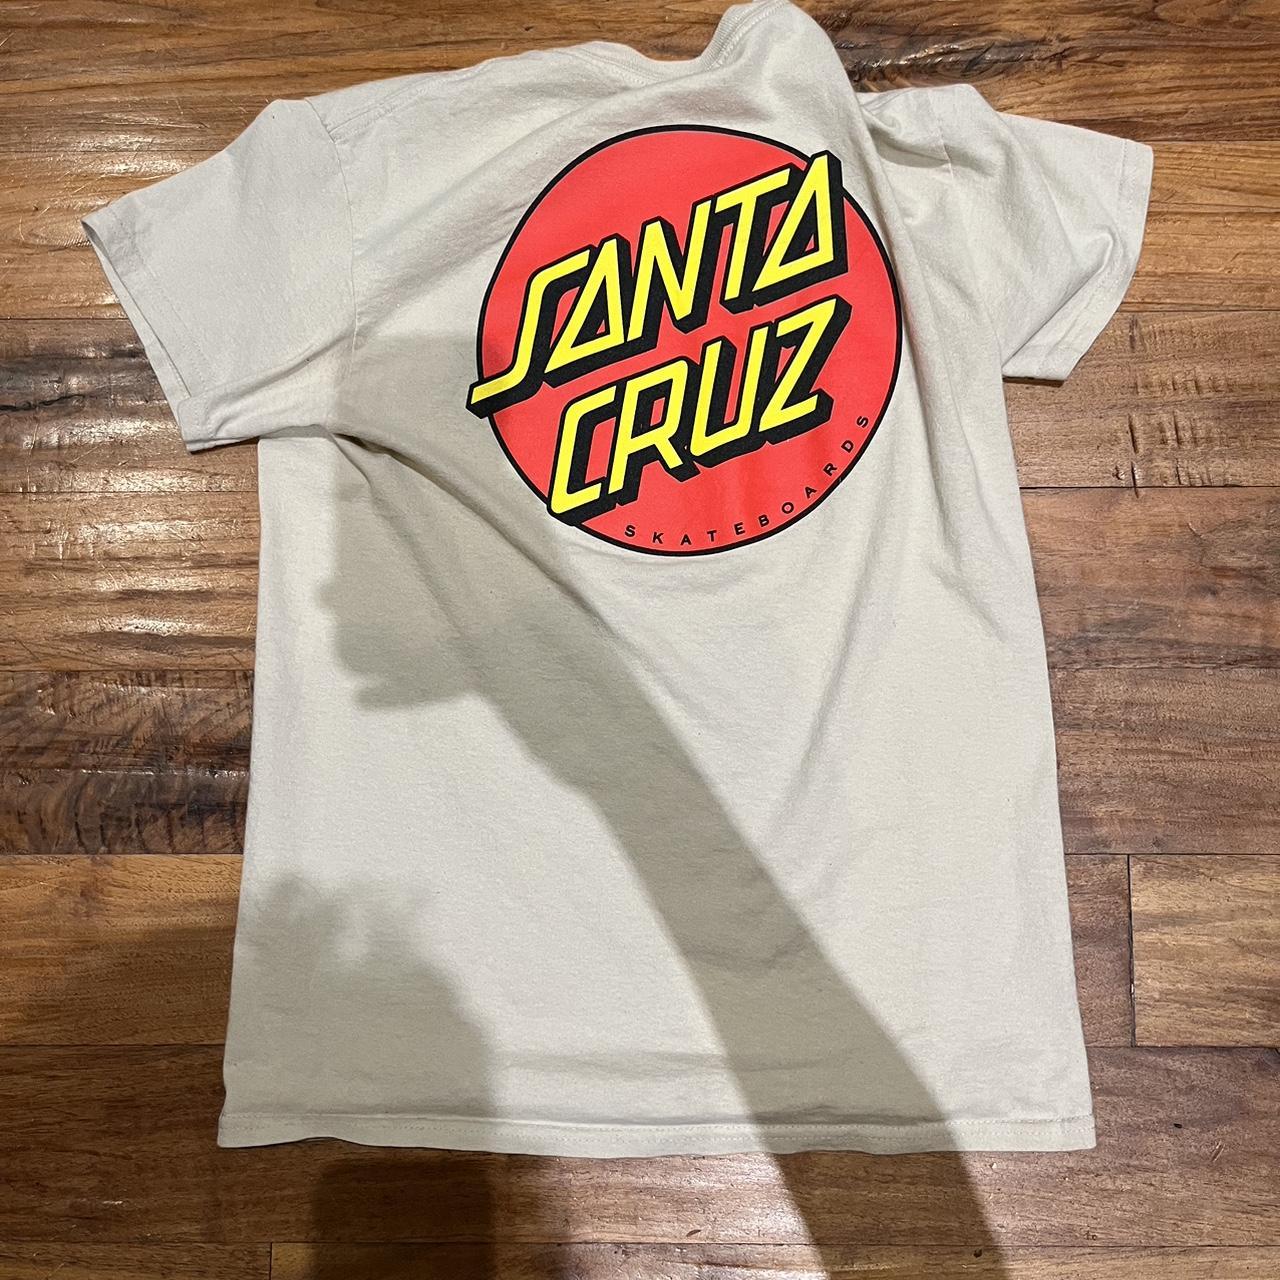 Santa Cruz Men's Tan and Cream T-shirt | Depop